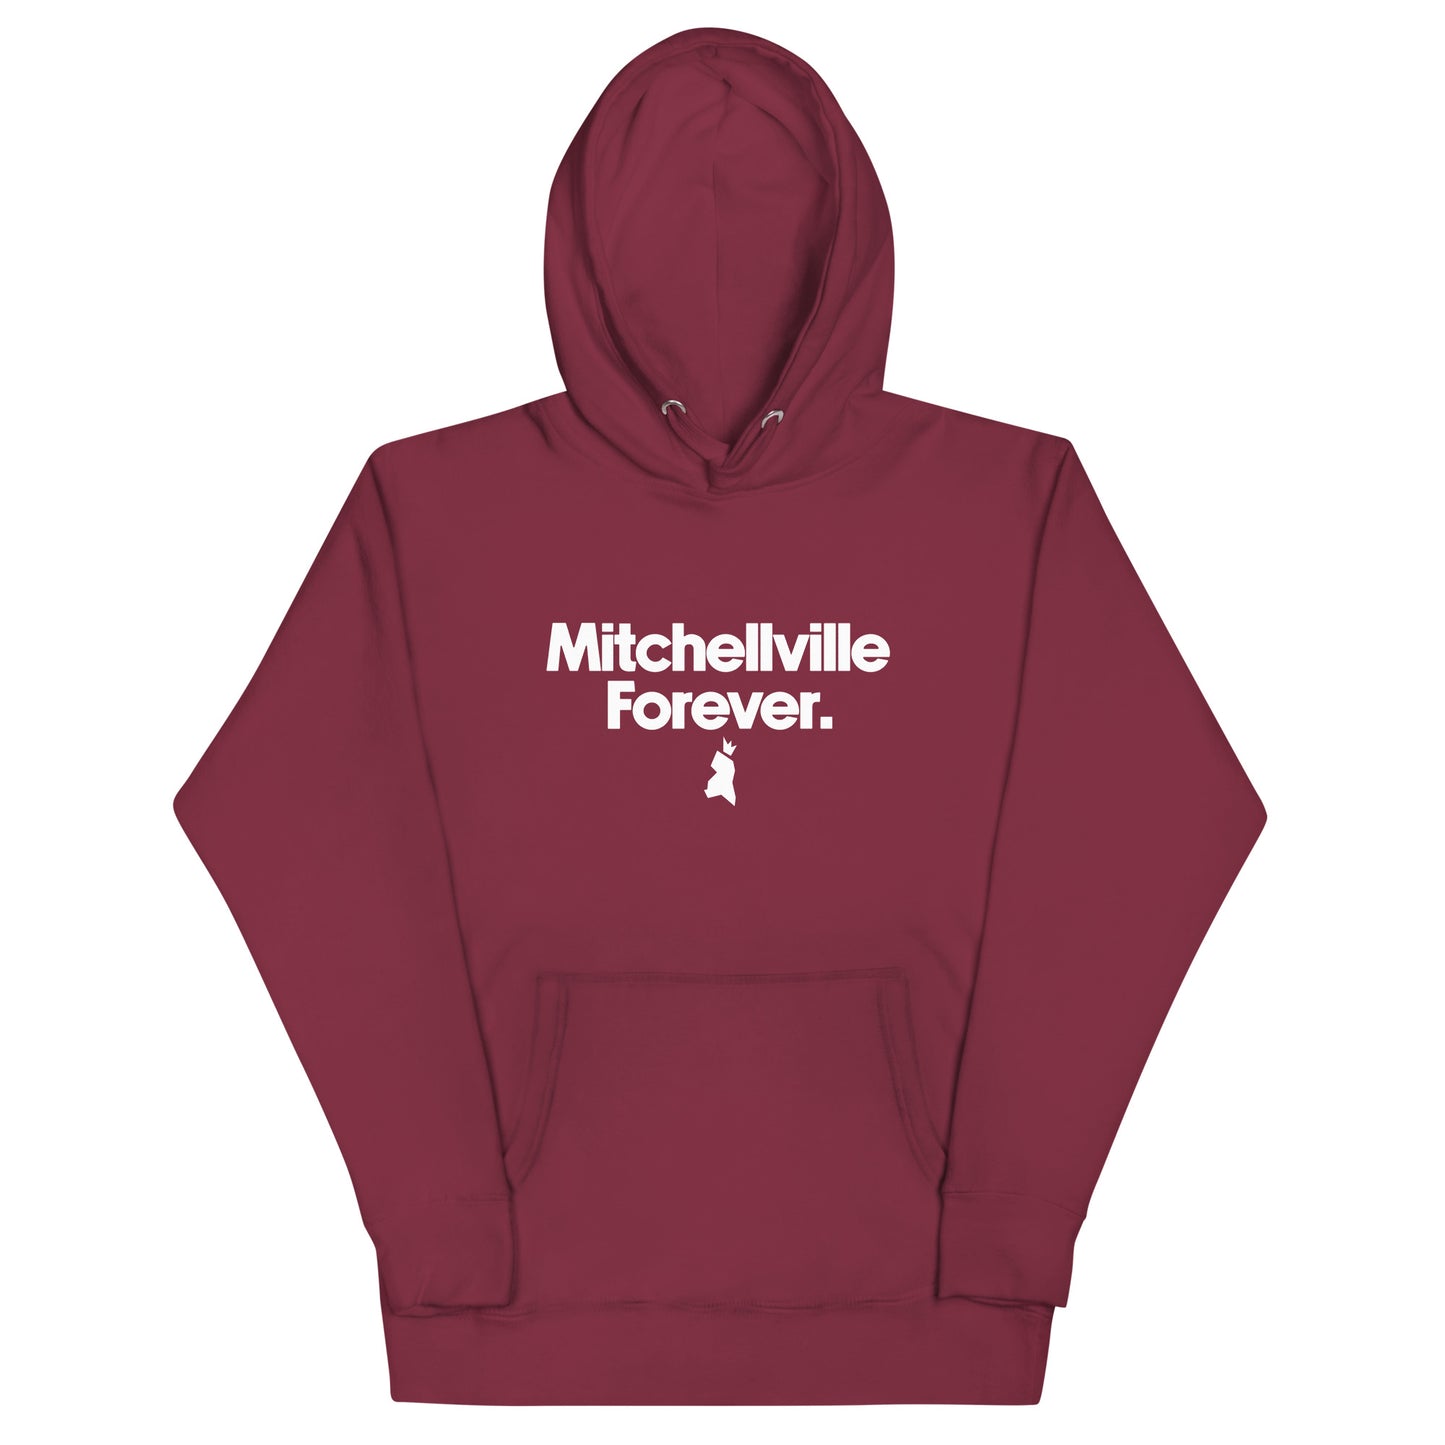 Mitchellville Forever Unisex Hoodie